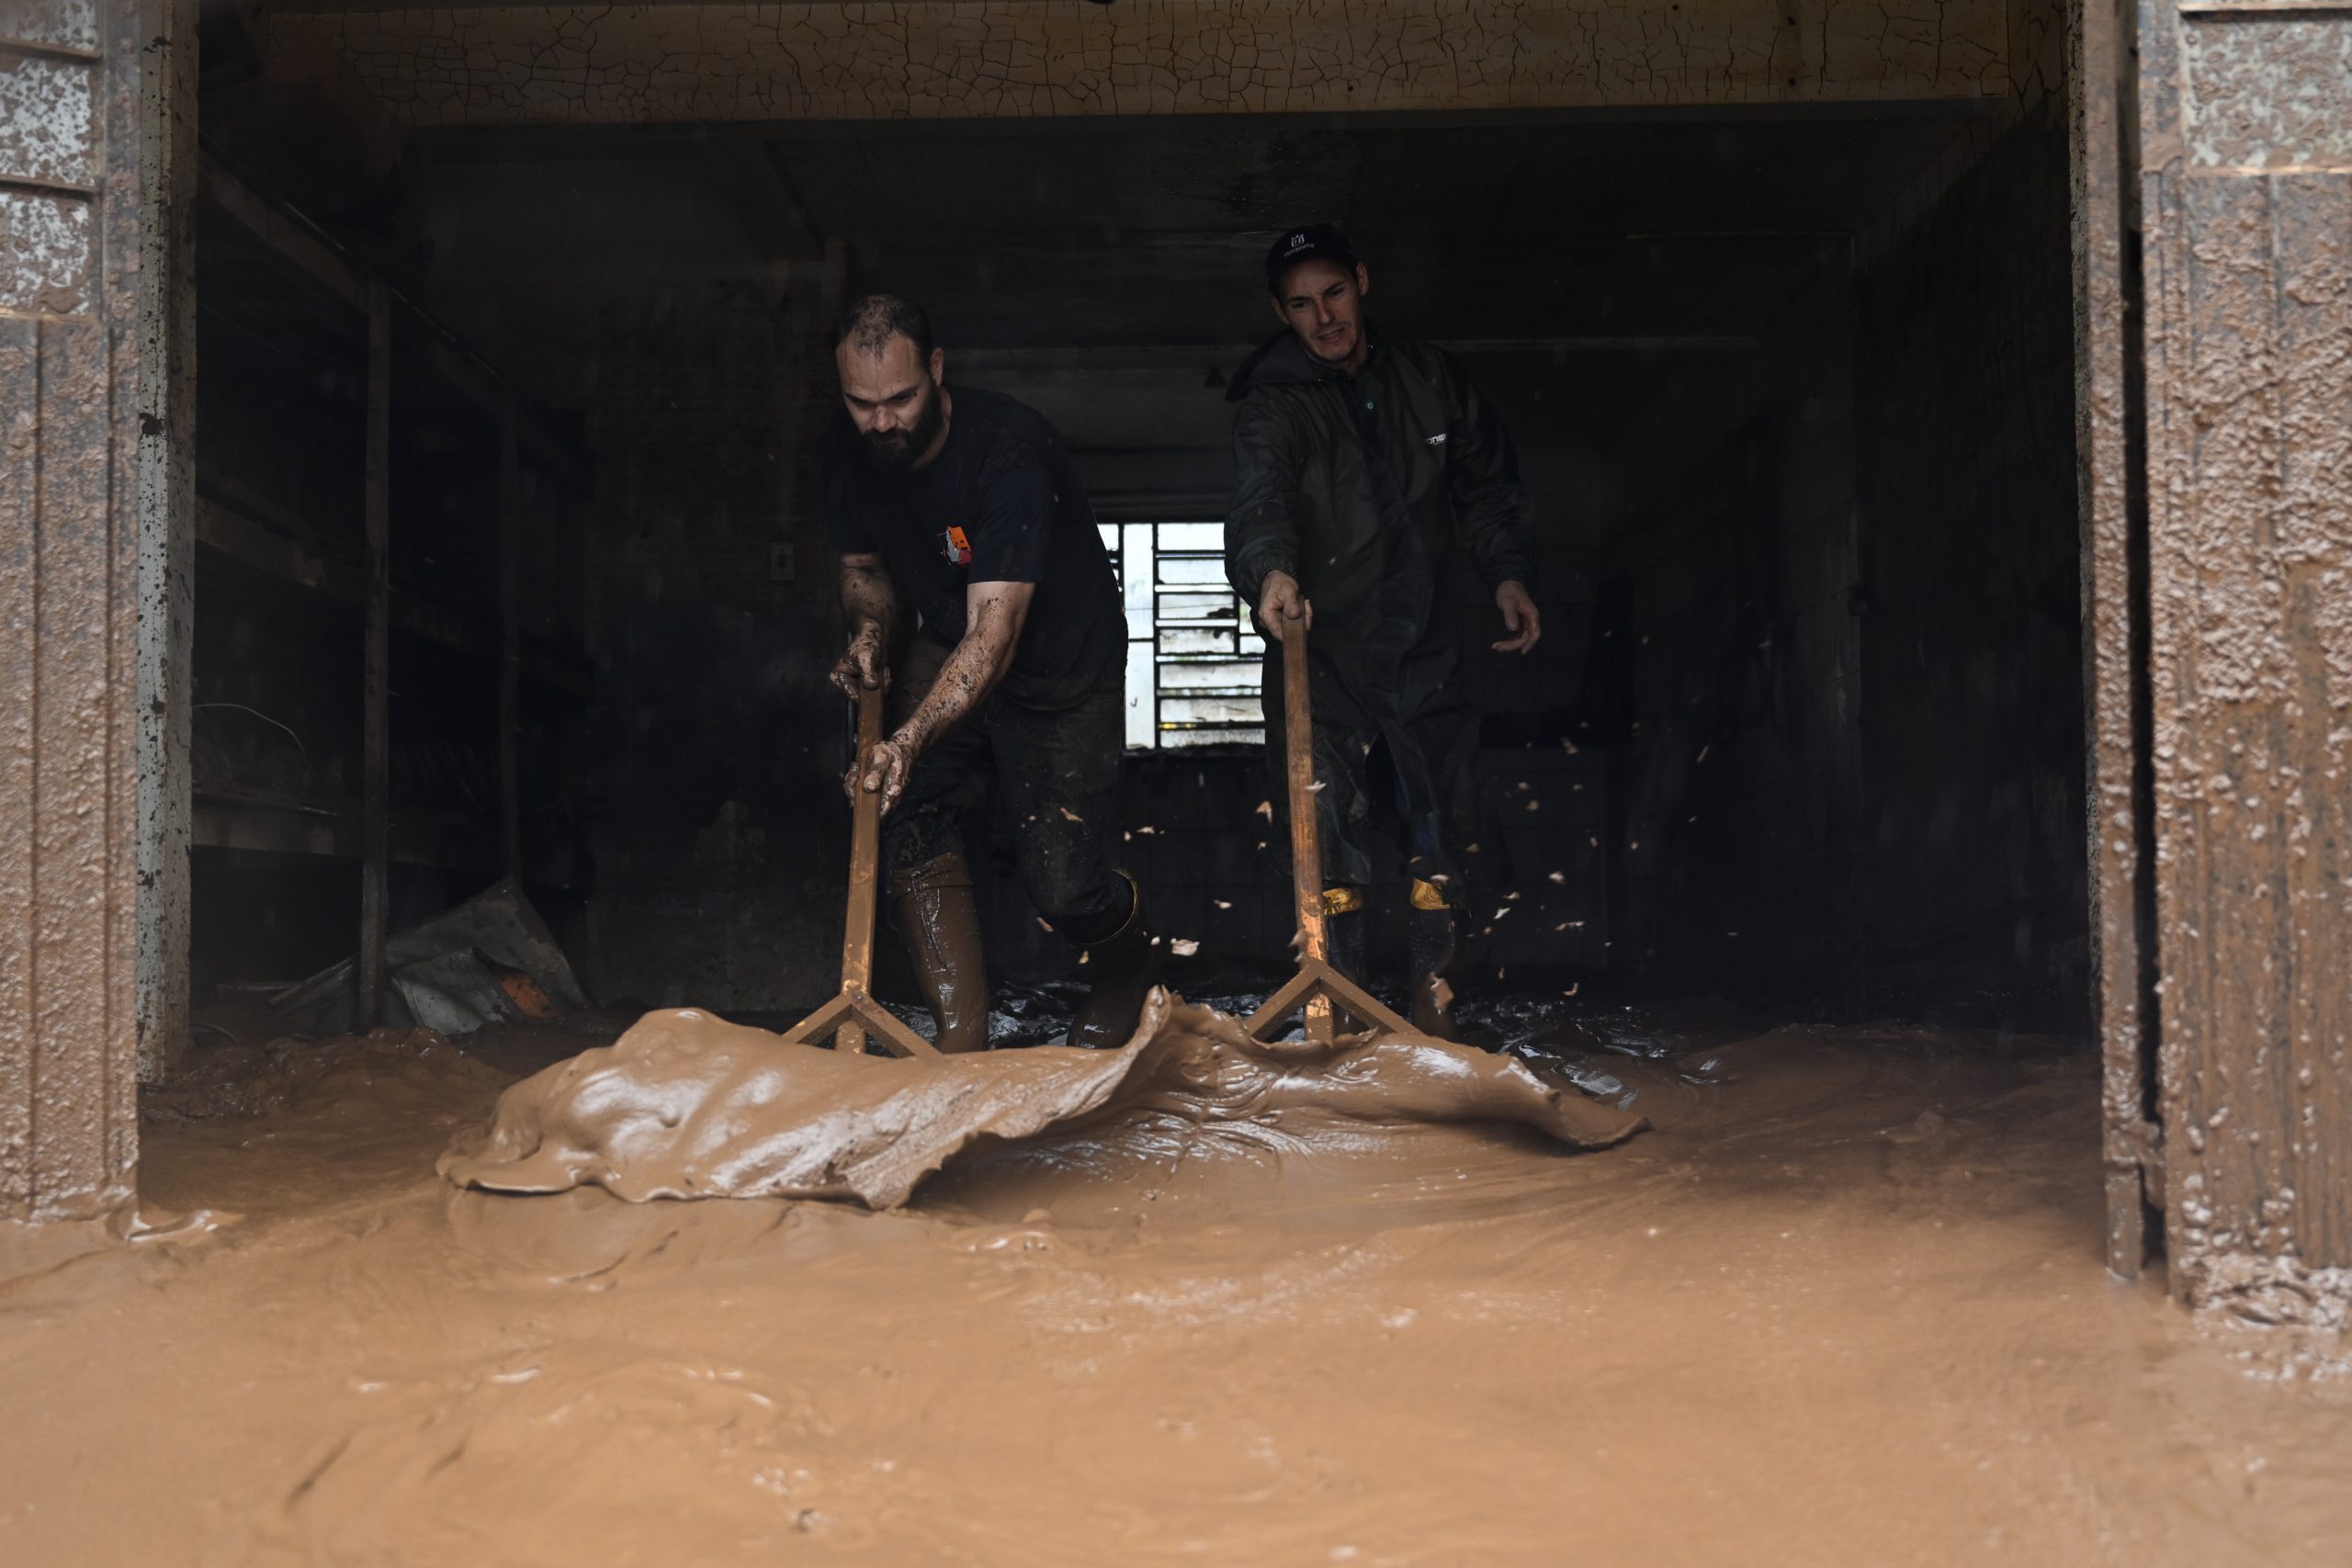 Brezilya’daki sel felaketinde ölenlerin sayısı 137’ye çıktı